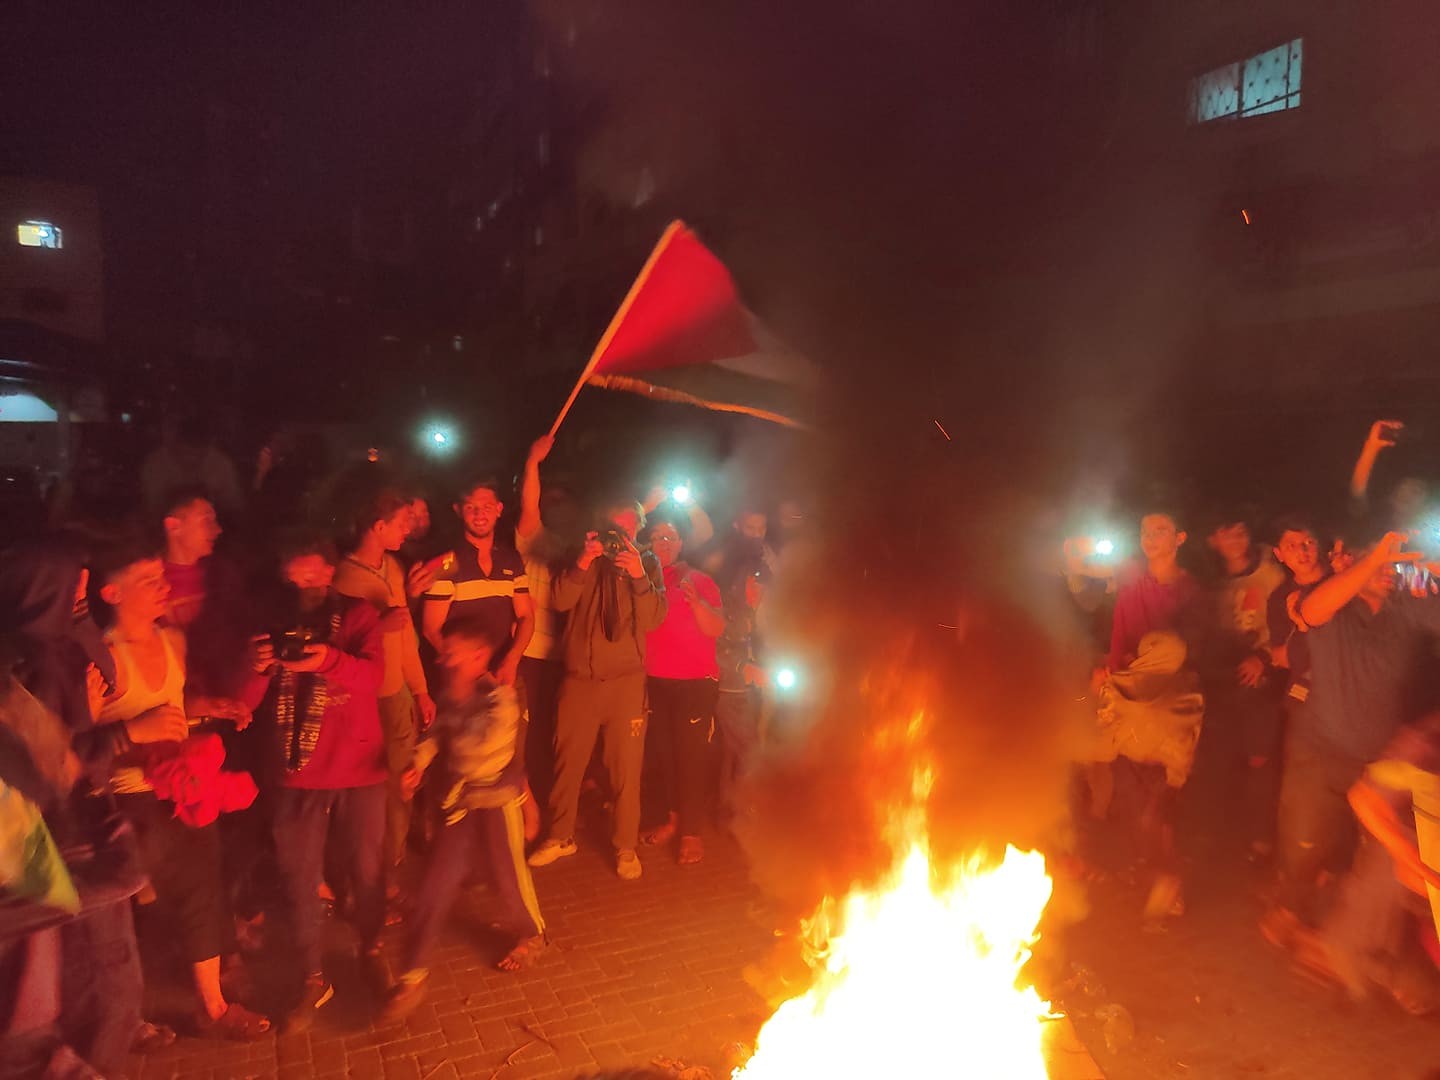 جماهير غزة تخرج في مظاهرات حاشدة إسنادًا لأهالي القدس